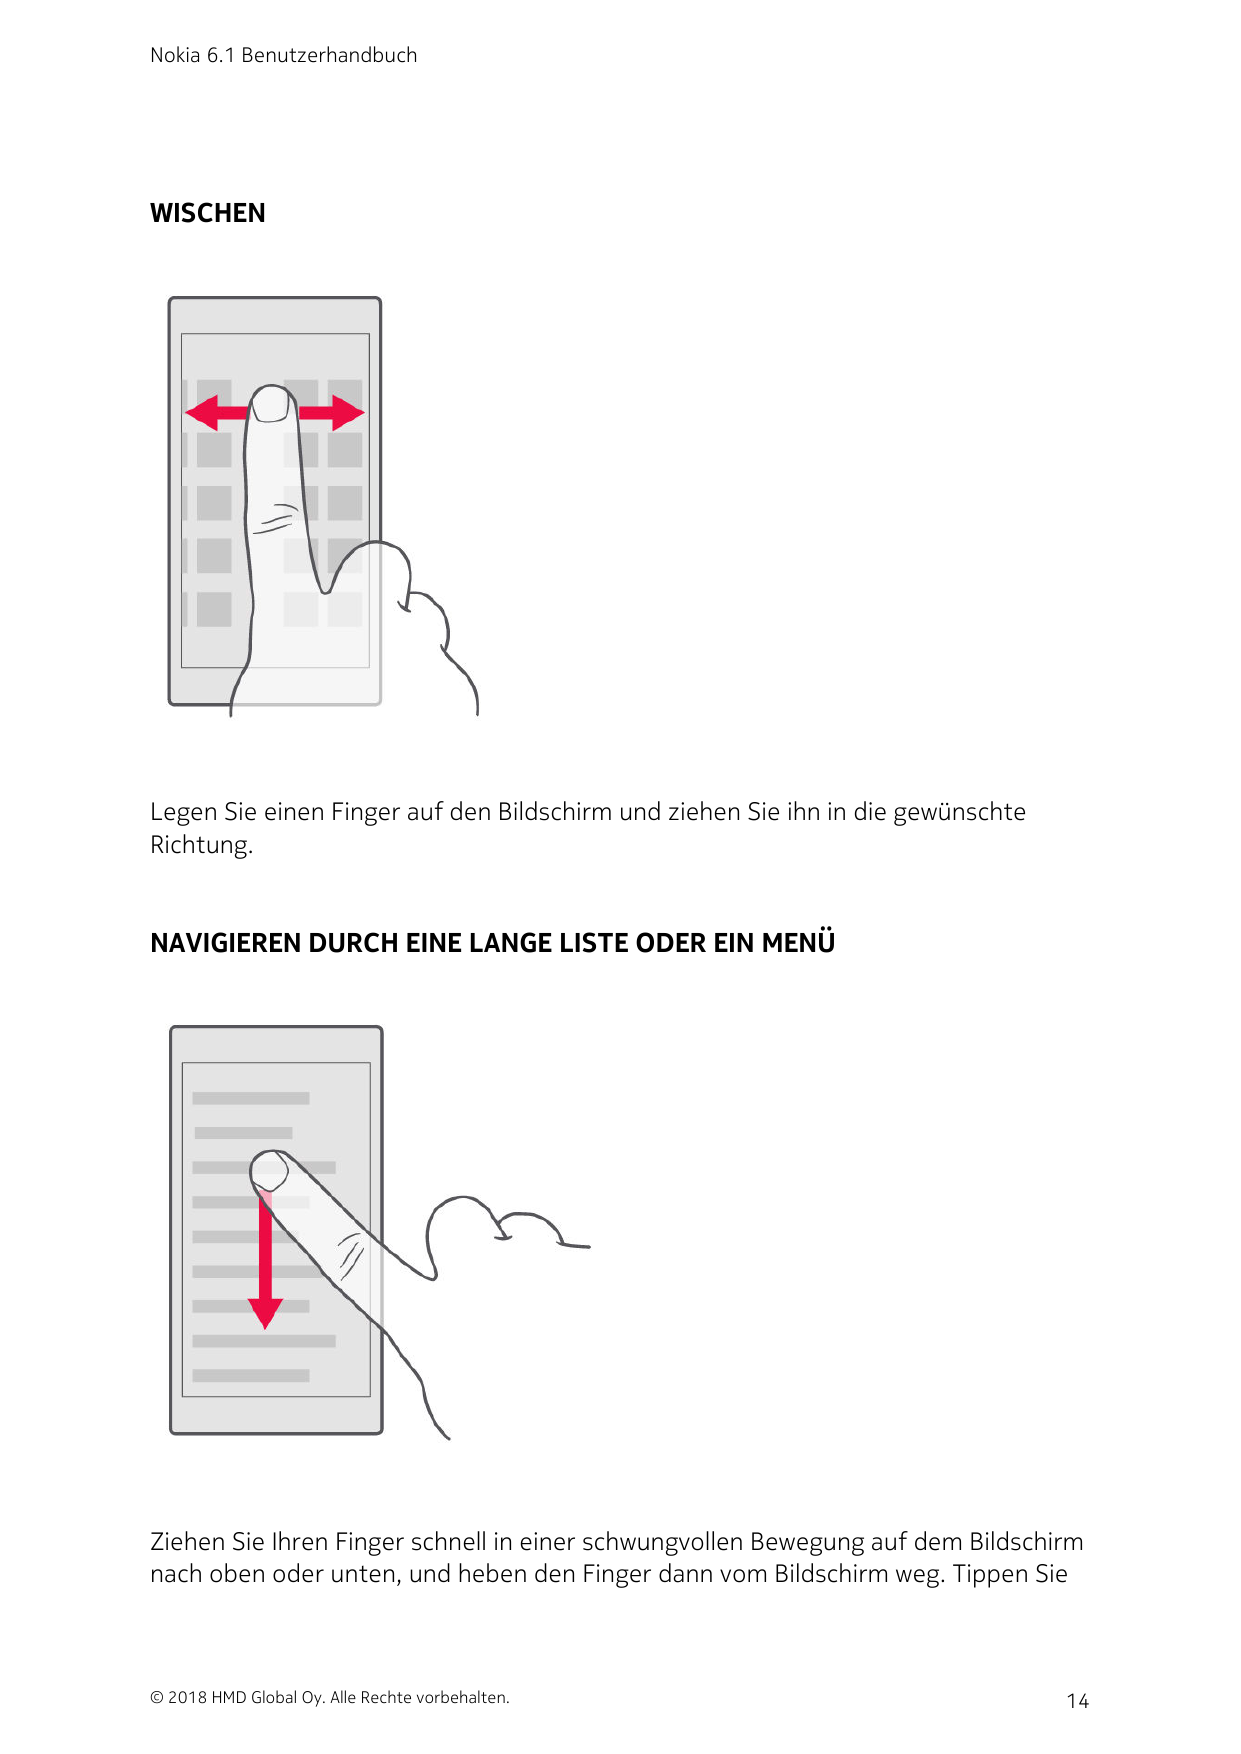 Nokia 6.1 BenutzerhandbuchWISCHENLegen Sie einen Finger auf den Bildschirm und ziehen Sie ihn in die gewünschteRichtung.NAVIGIER